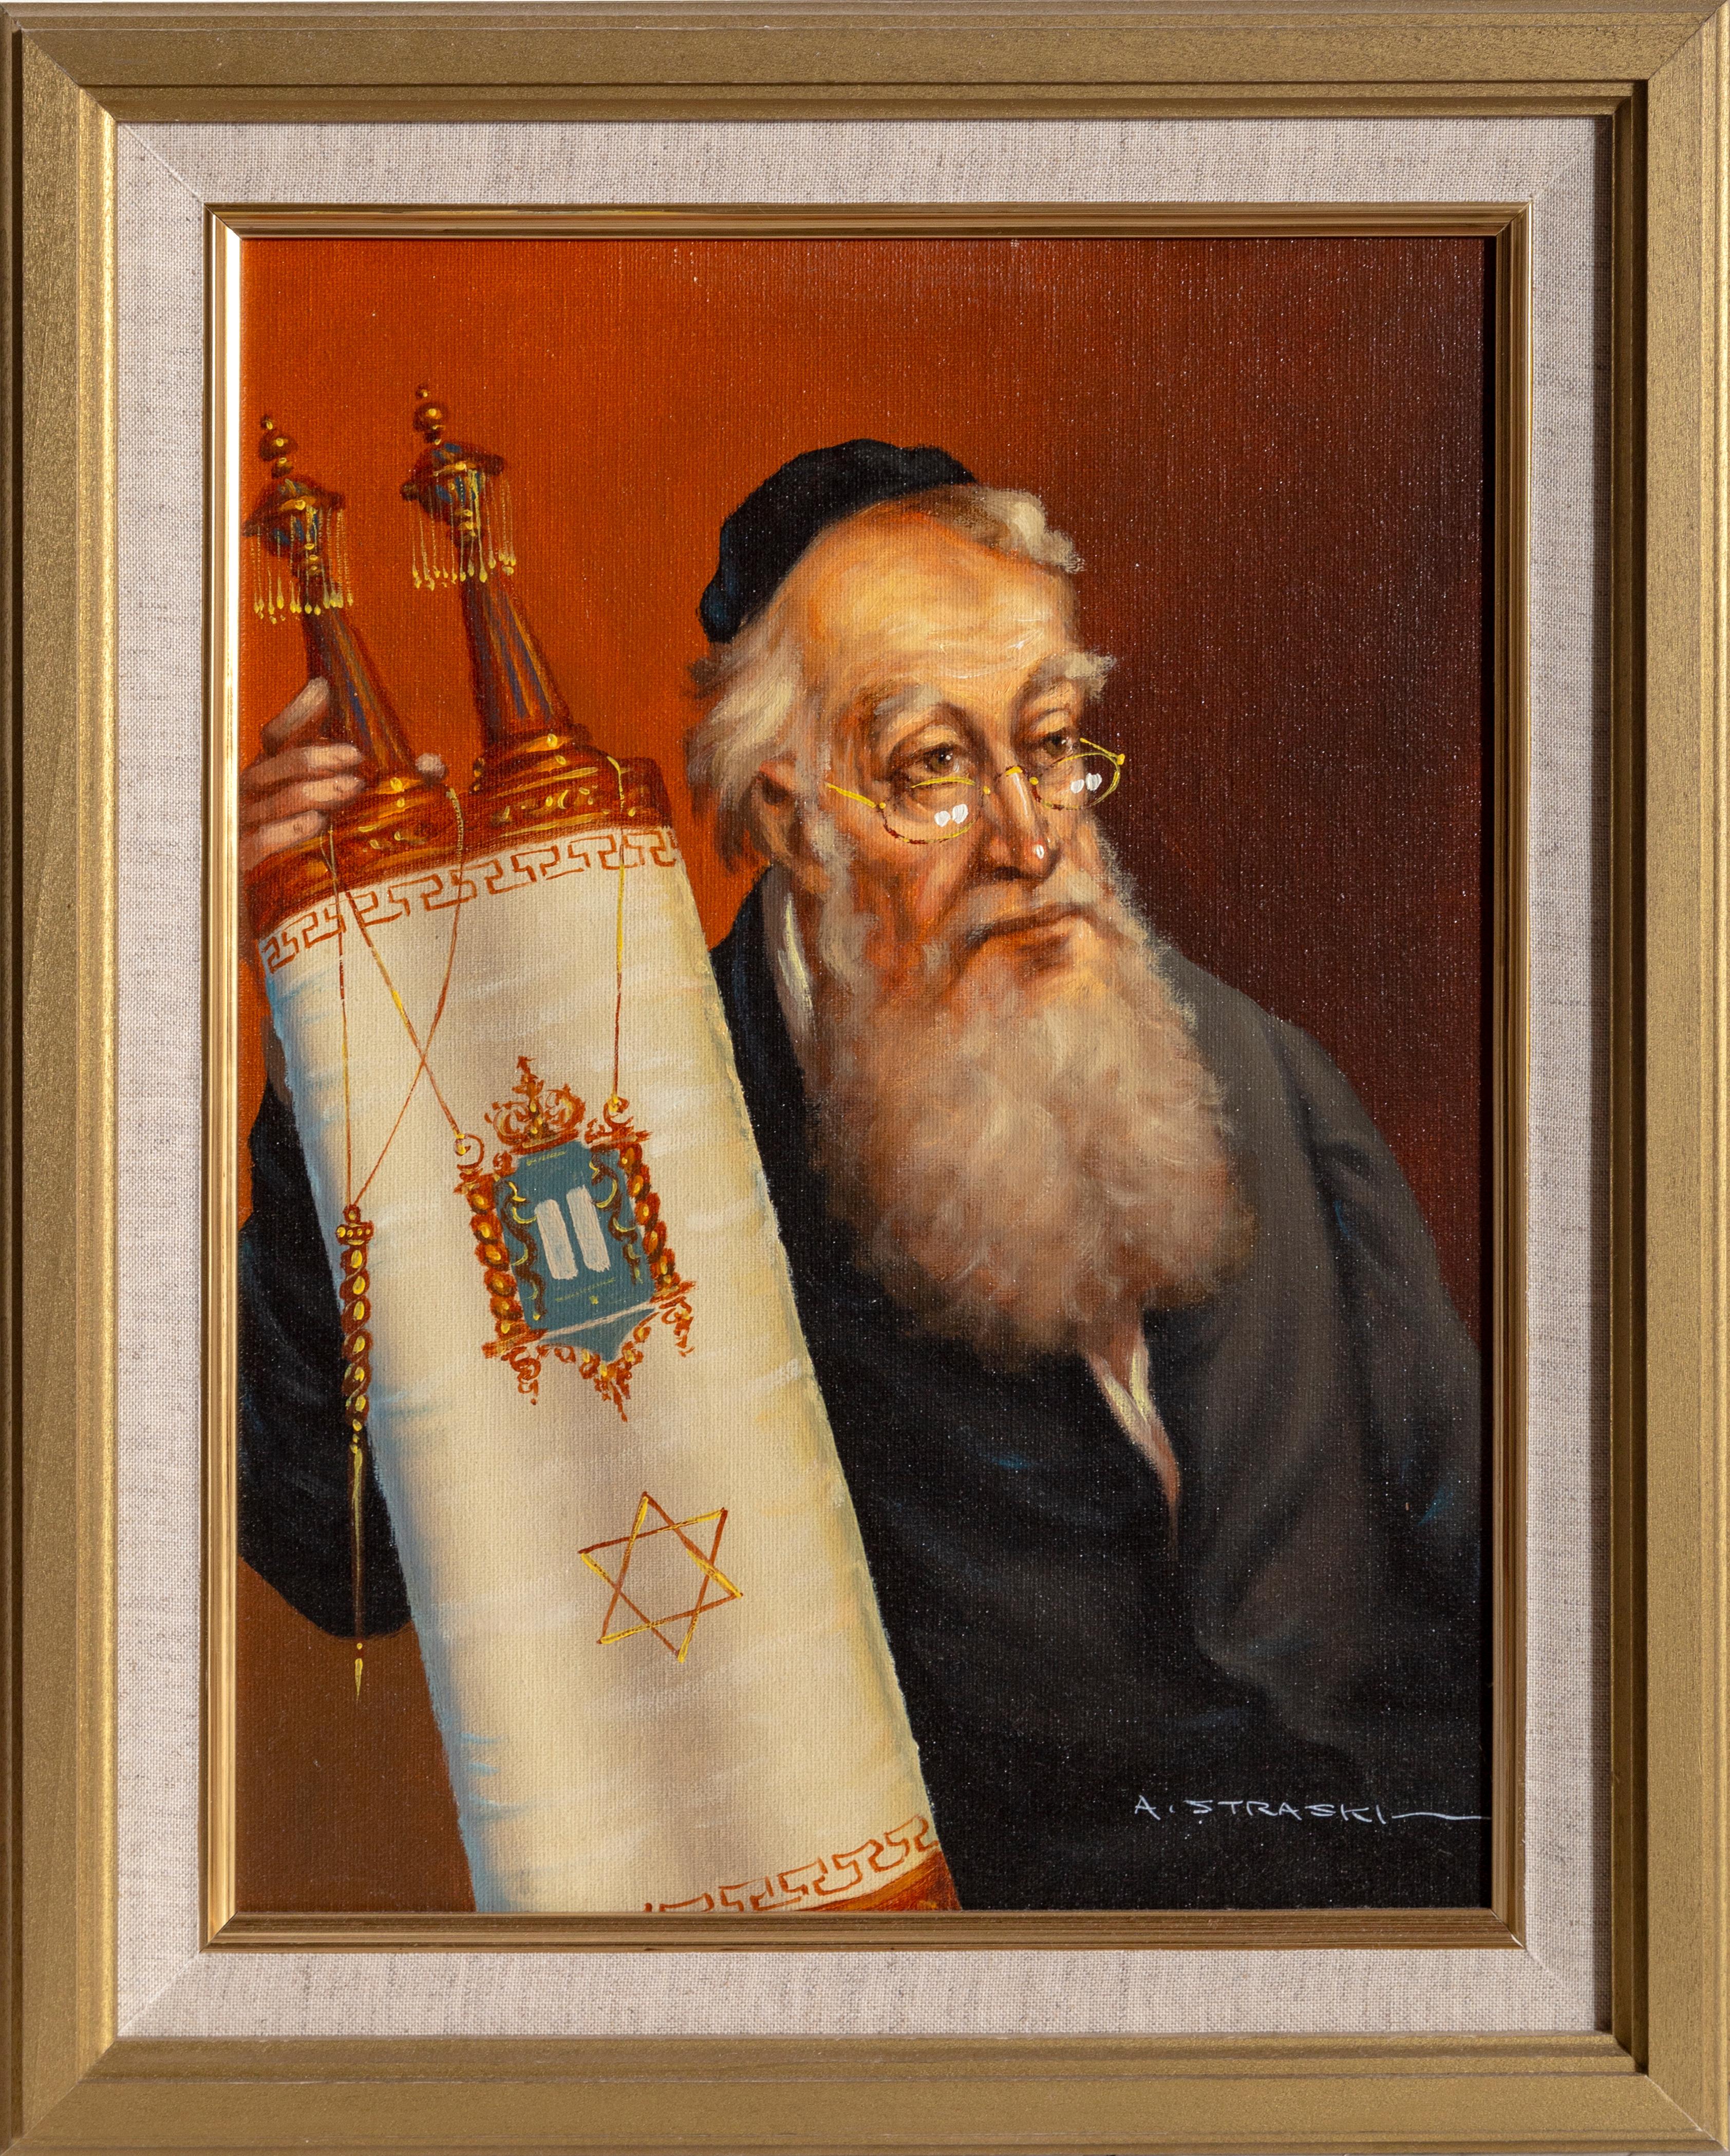 Rabbin avec Torah
Abraham Straski, polonais (1903-1987)
Date : 1950
Huile sur toile sur bois, signée et datée
Taille : 40,64 x 30,48 cm (16 x 12 in)
Taille du cadre : 19.5 x 15.5 pouces
